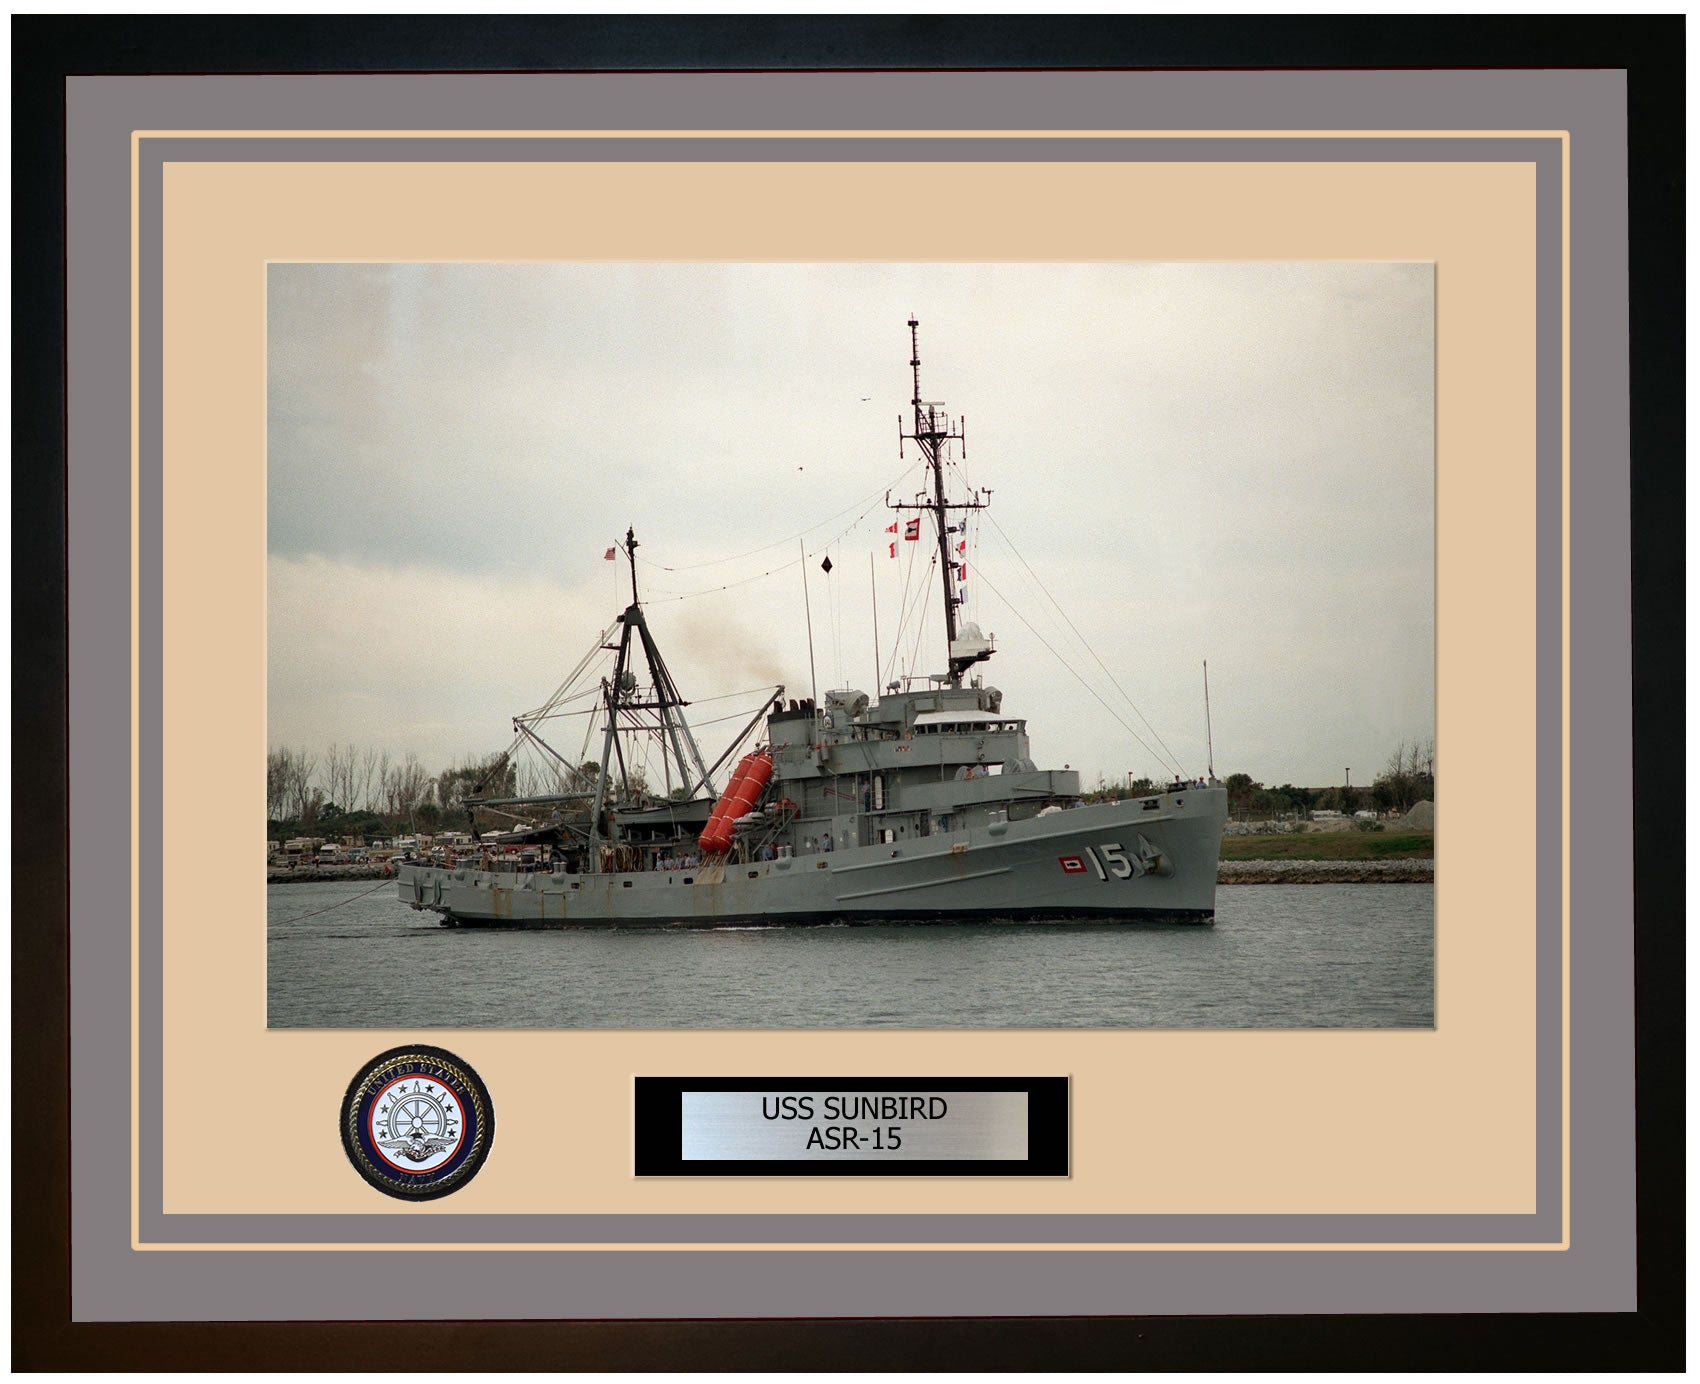 USS SUNBIRD ASR-15 Framed Navy Ship Photo Grey